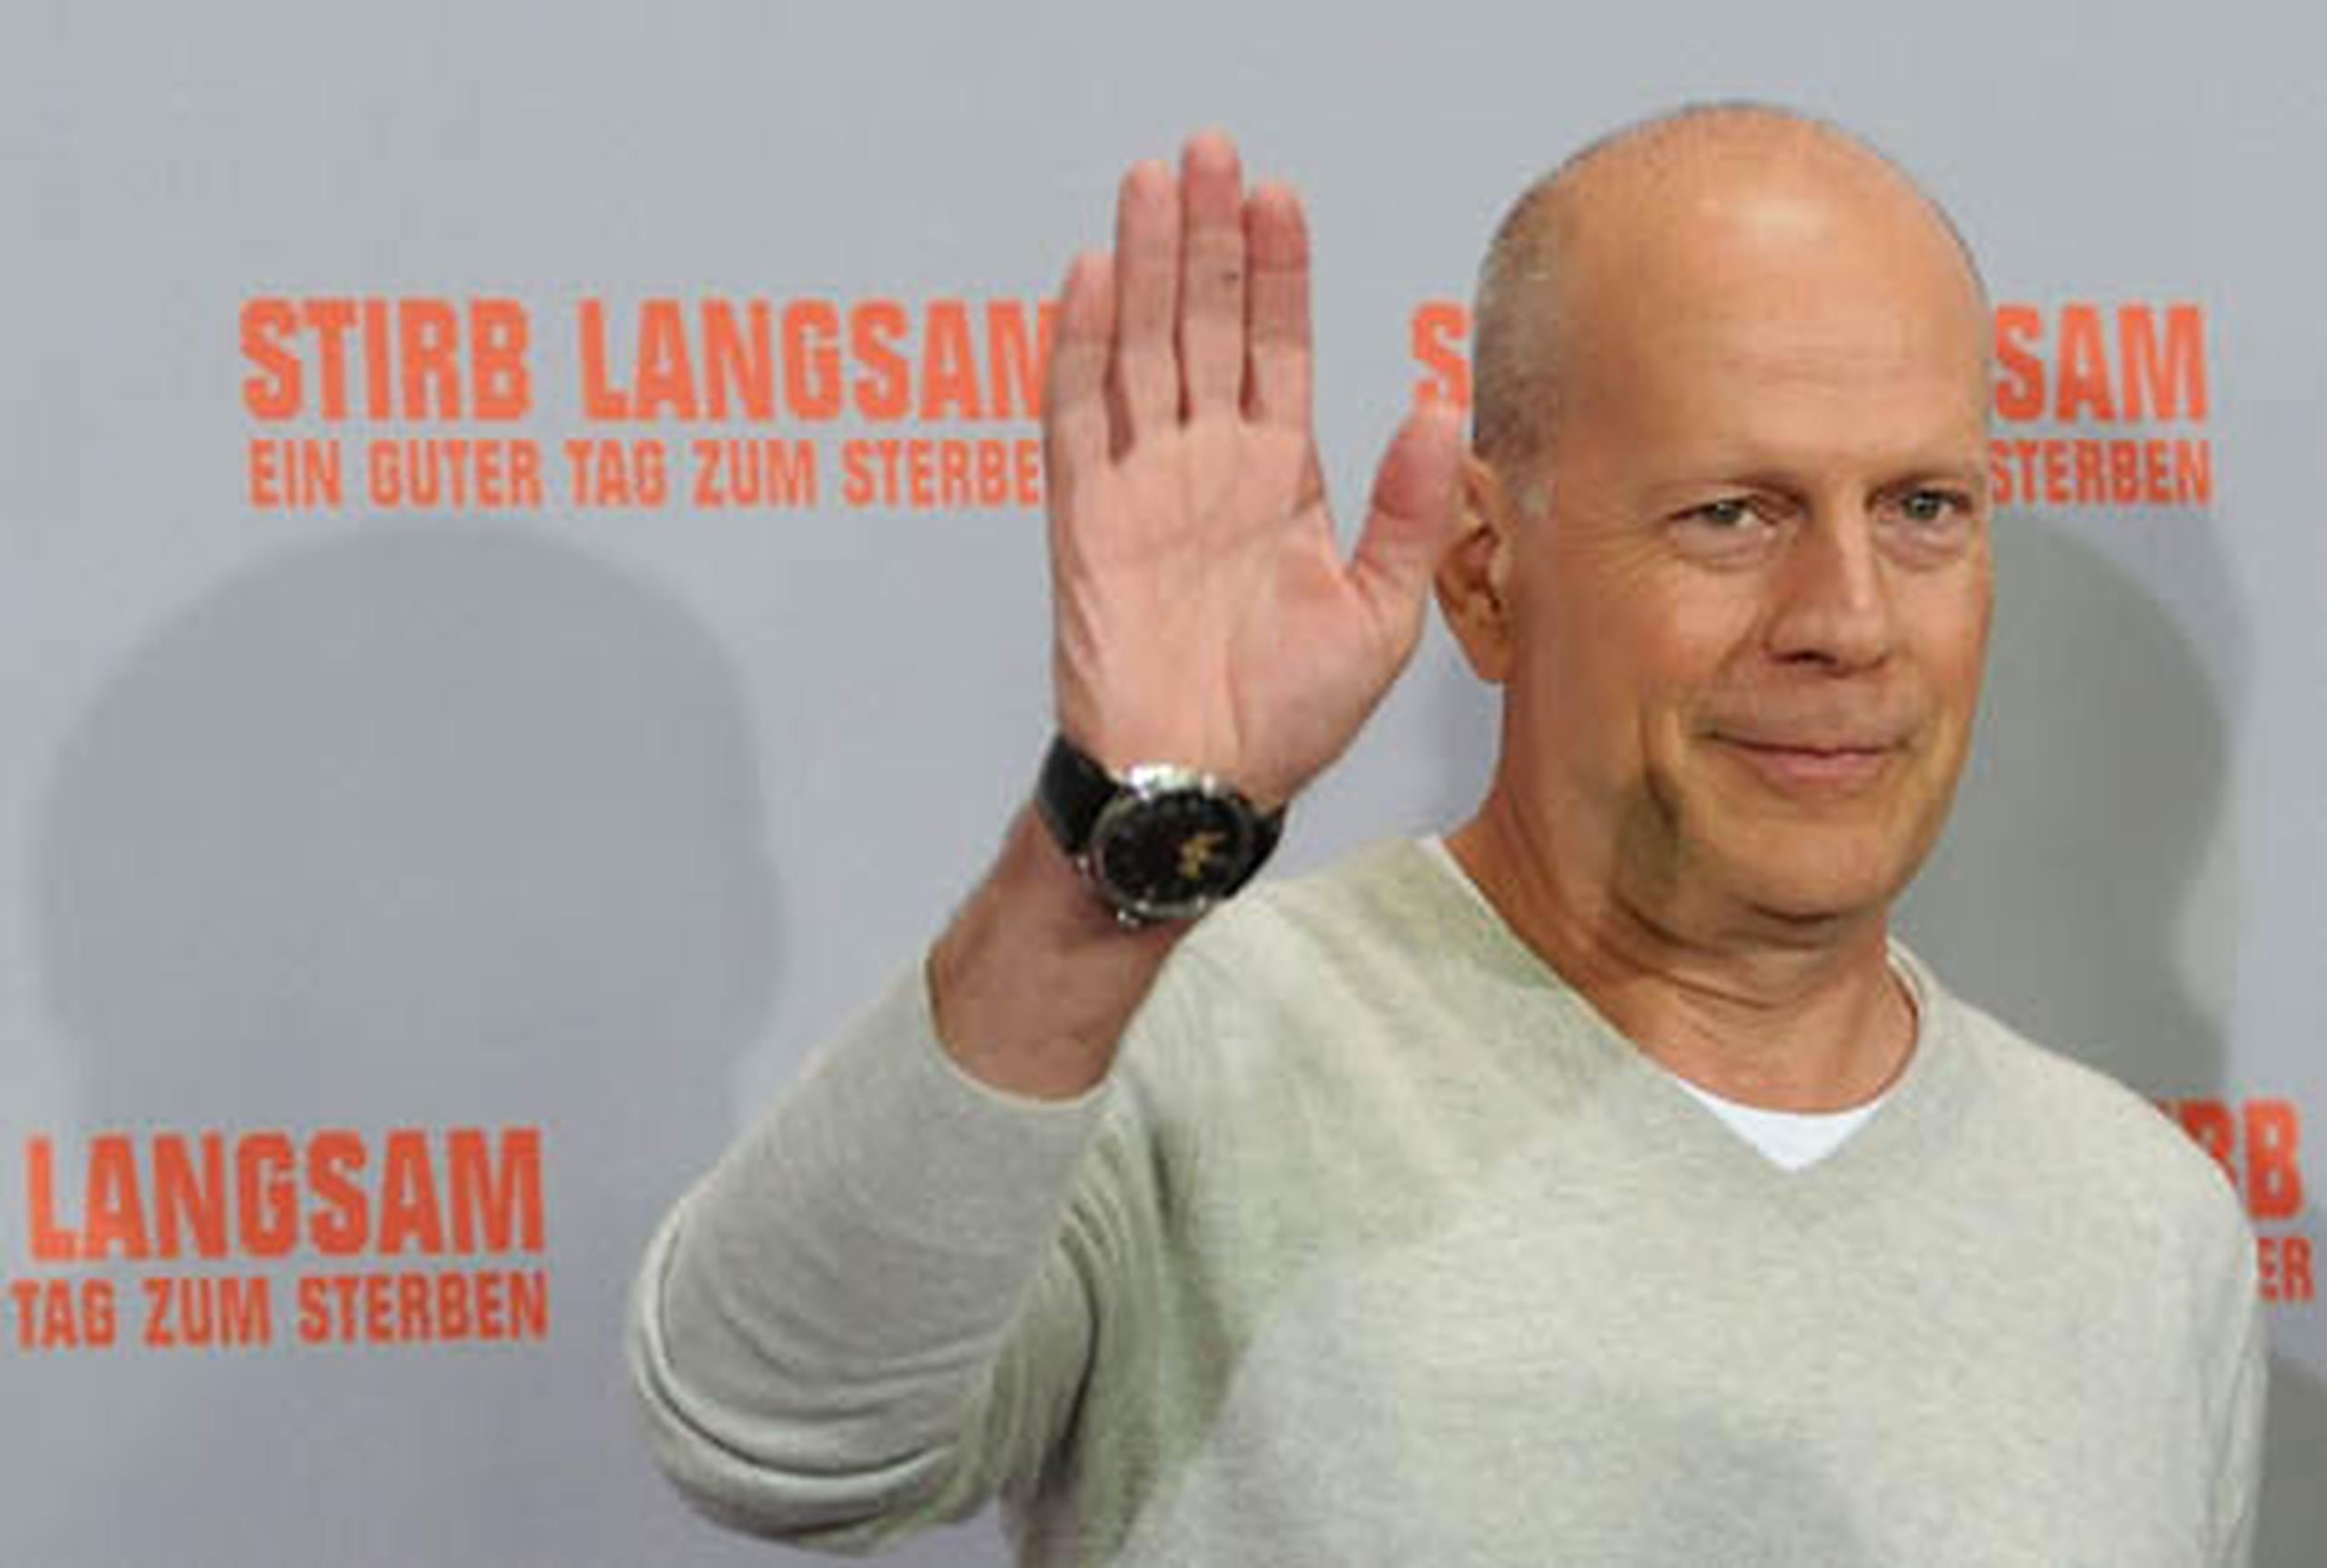 Bruce Willis también rechazó cualquier relación entre las escenas violentas de Hollywood y la violencia en la vida real. (AFP/Britta Pedersen)